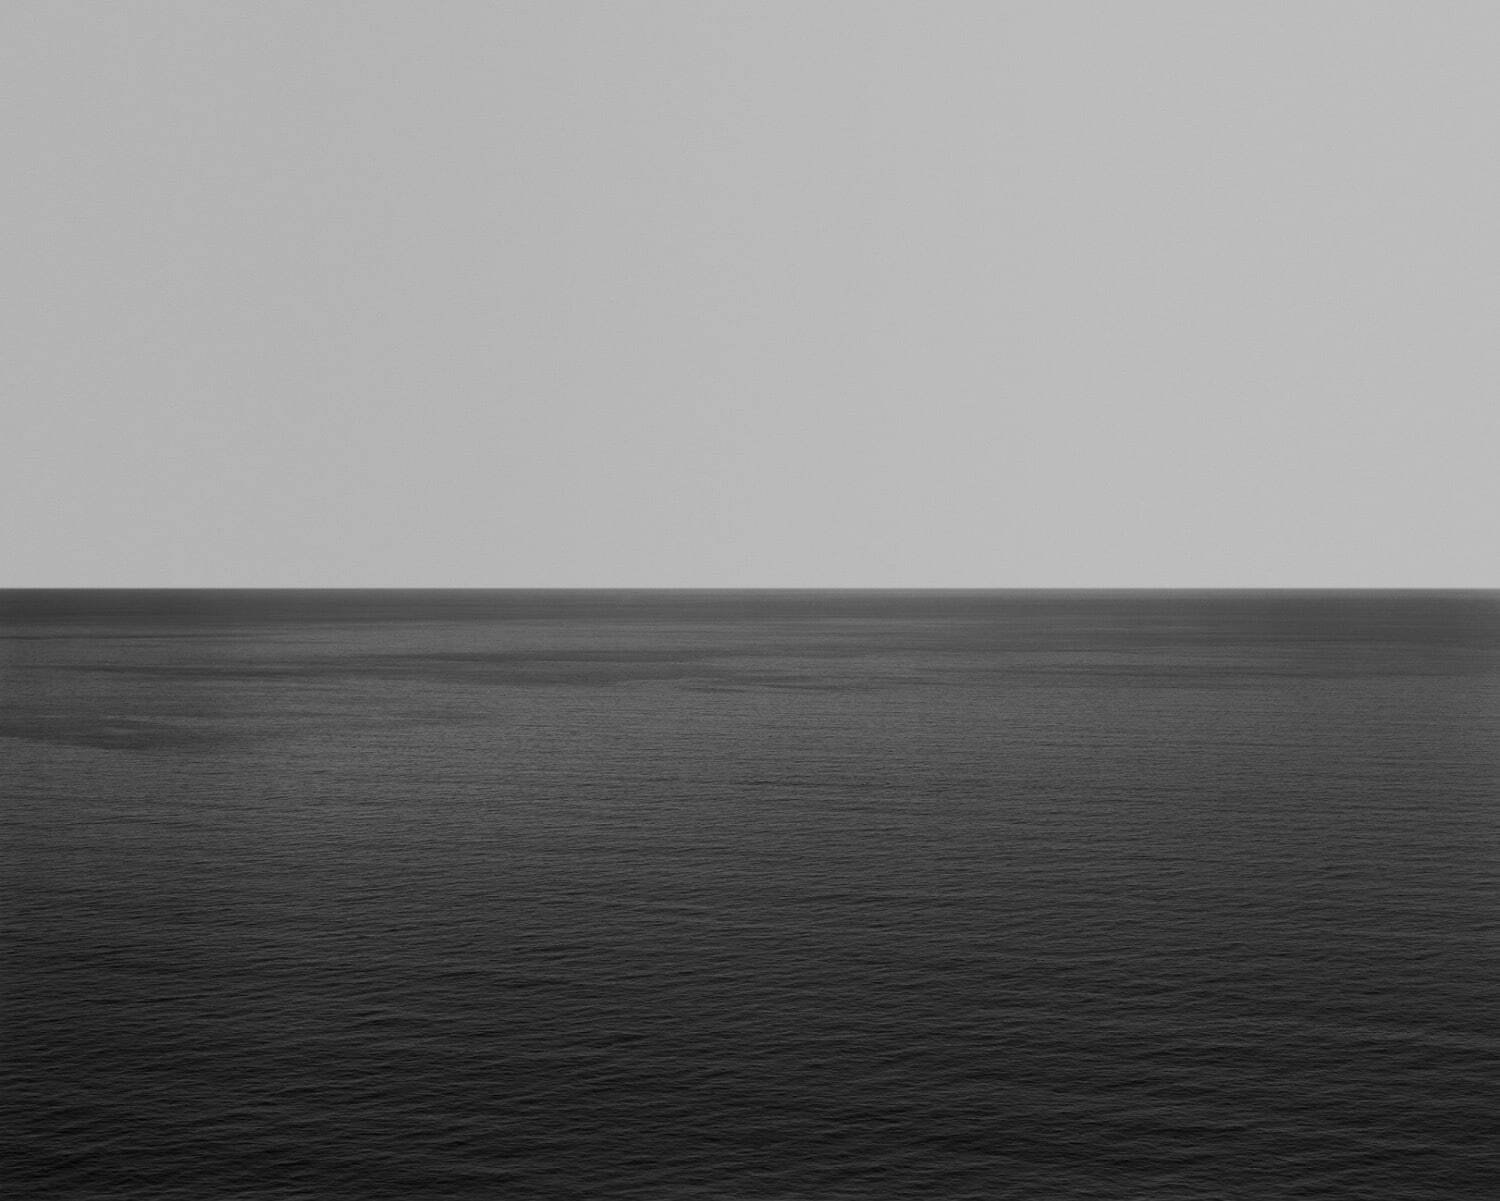 杉本博司 《相模湾、江之浦》
2021年1月1日 ピグメント・プリント 作家蔵
©Hiroshi Sugimoto